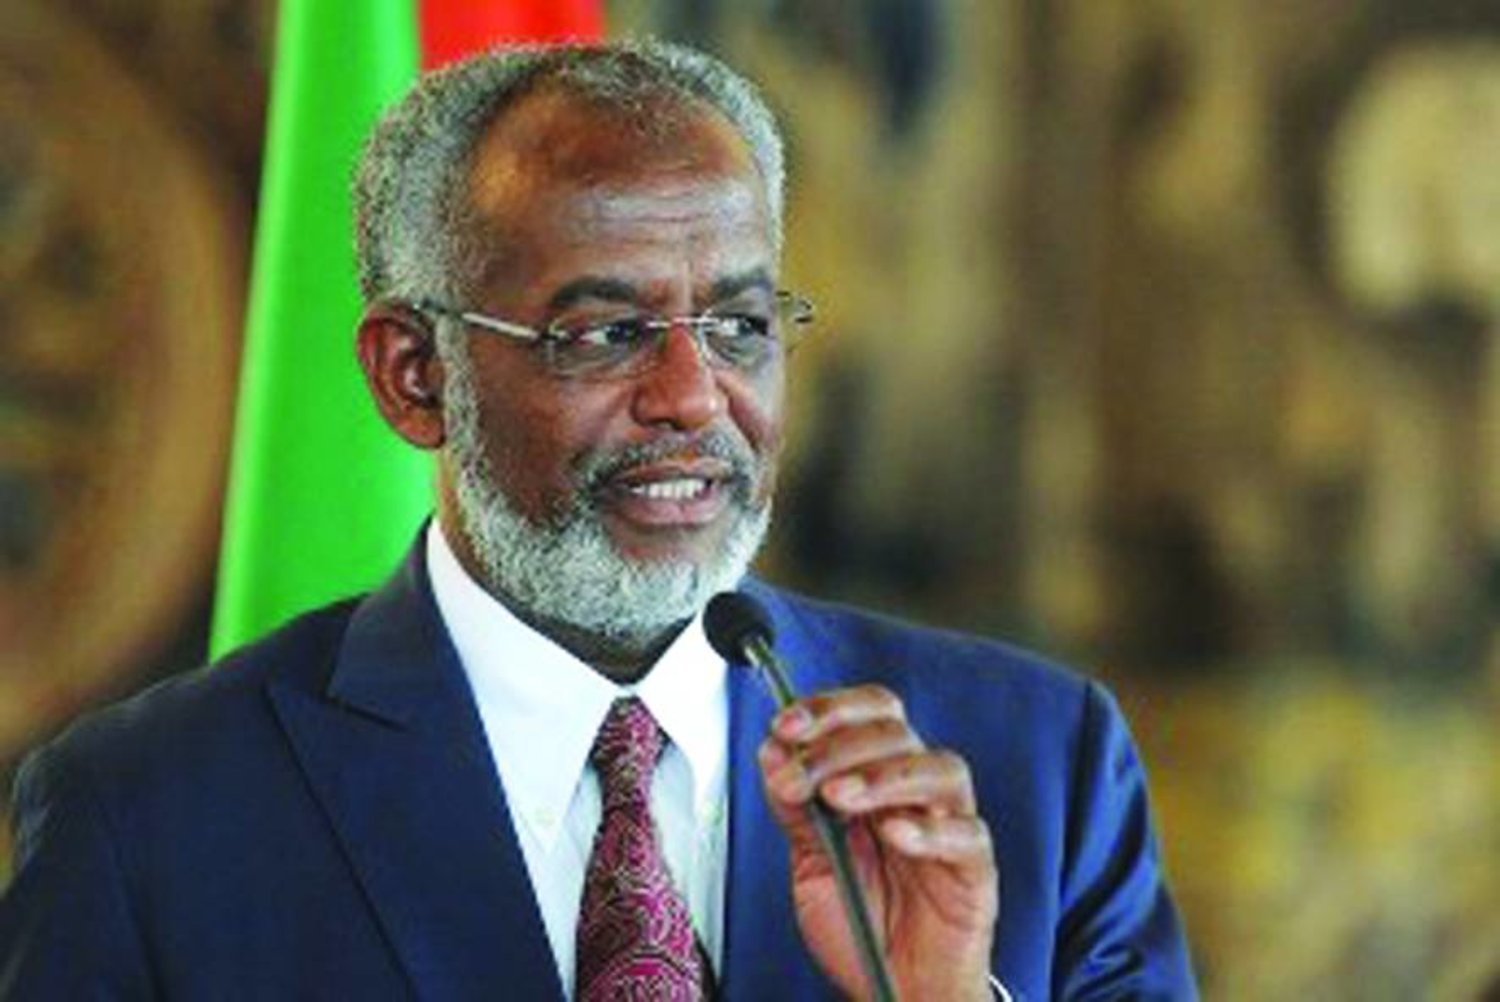 
علي كرتي الأمين العام لـ«الحركة الإسلامية» في السودان (غيتي)